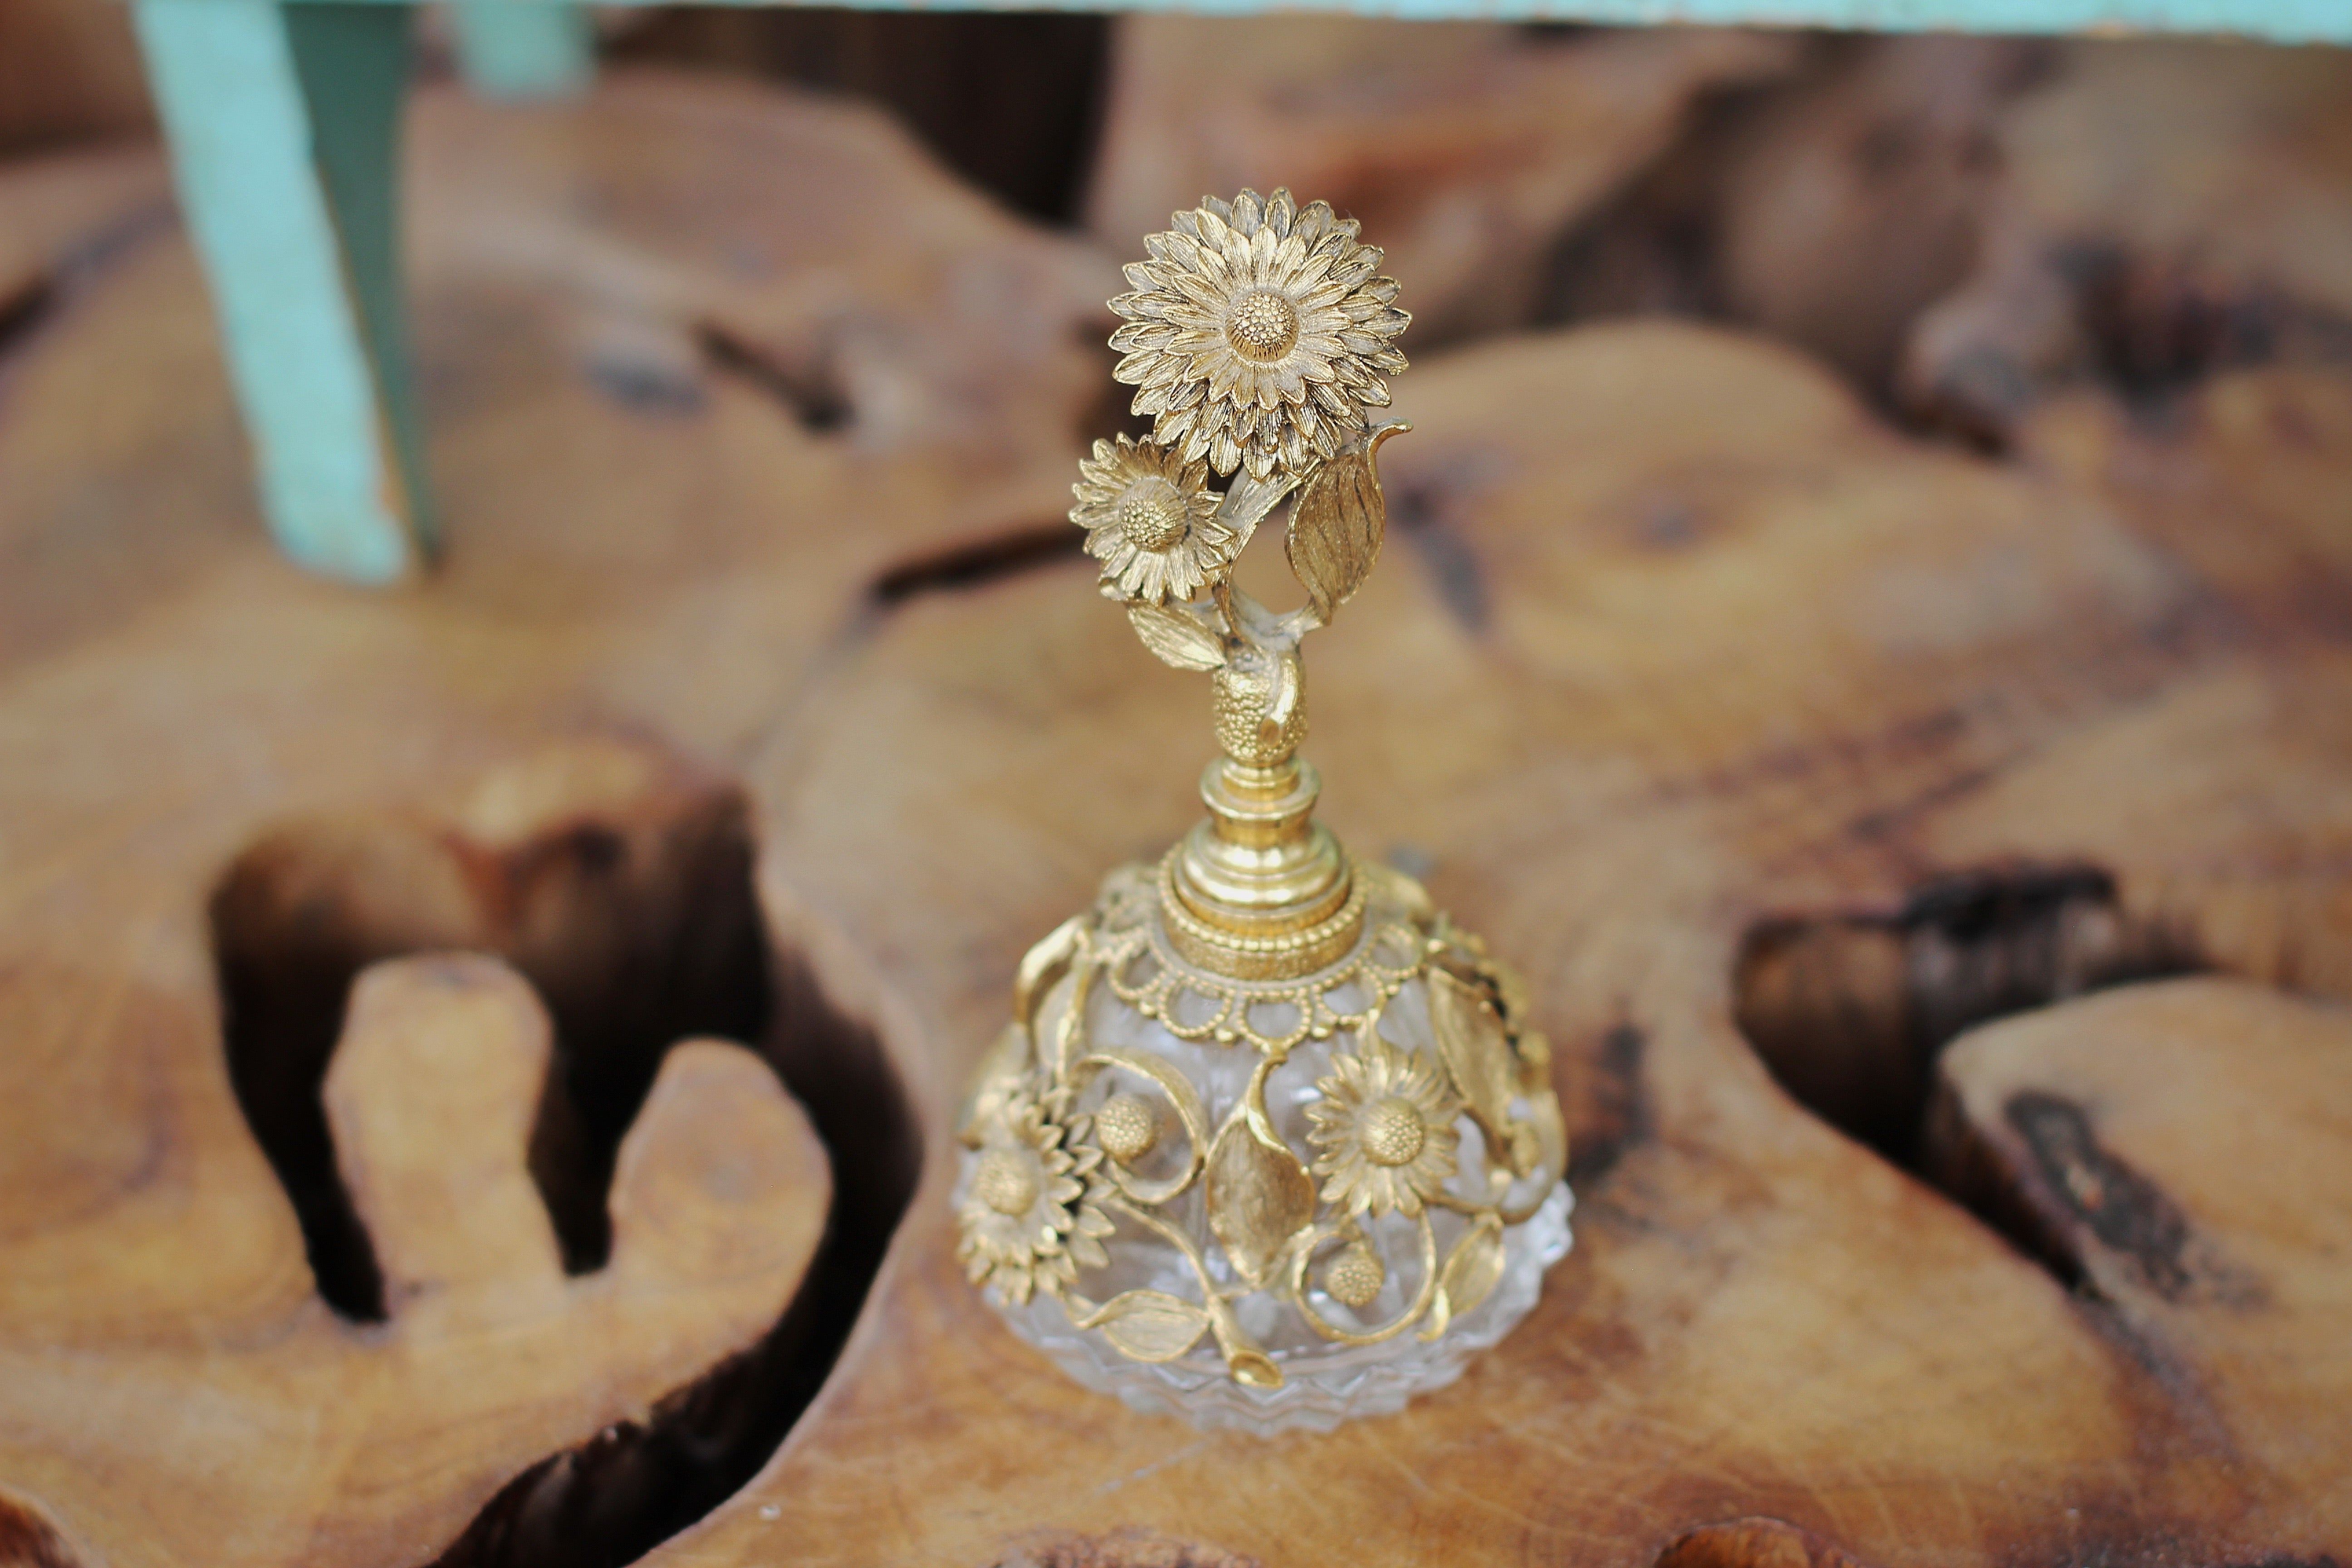 Antique Filigree Sunflower Matson Perfume Bottle